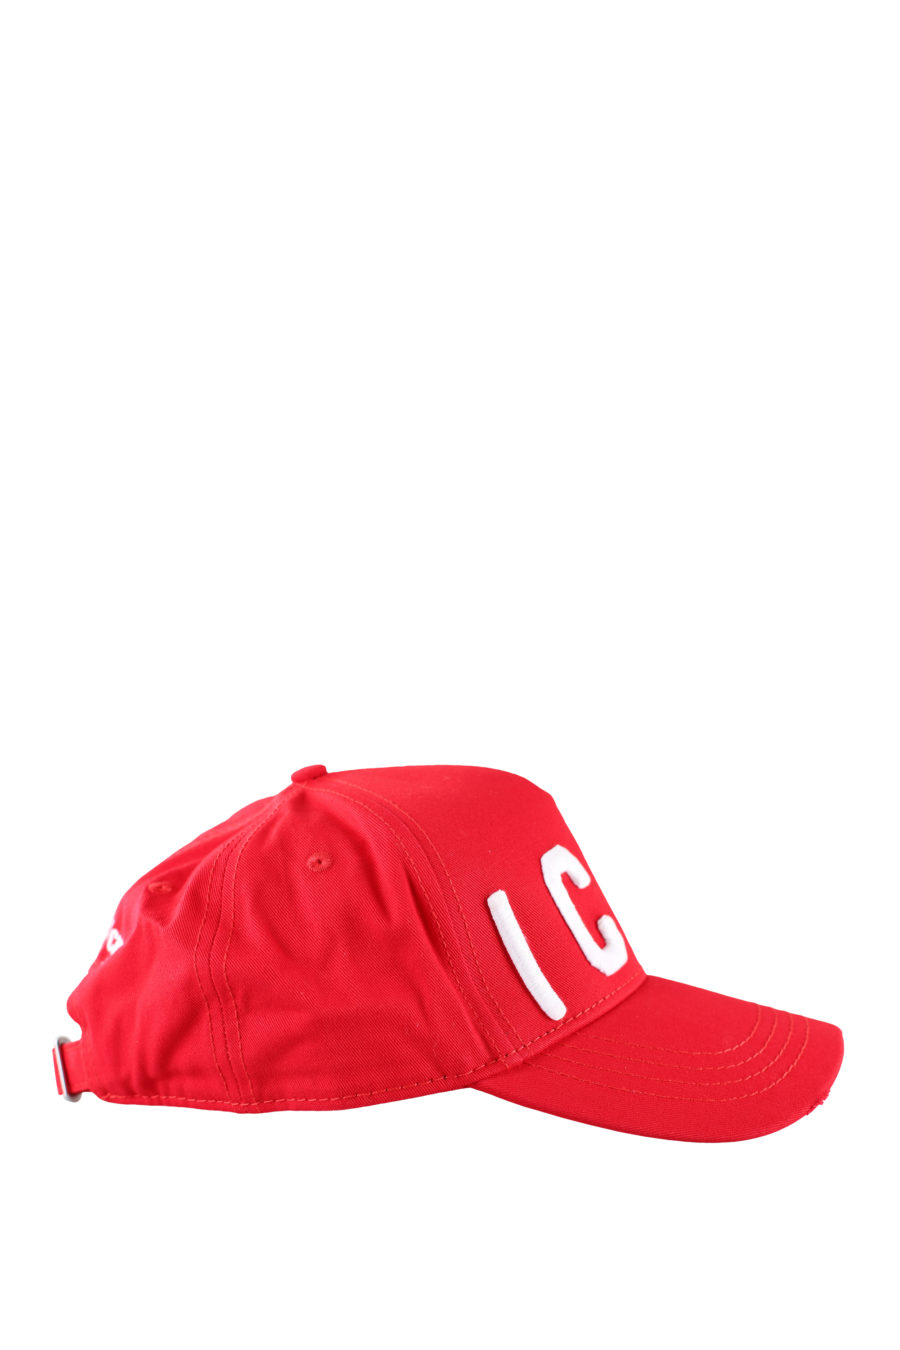 Casquette rouge réglable avec logo "icon" blanc - IMG 0060